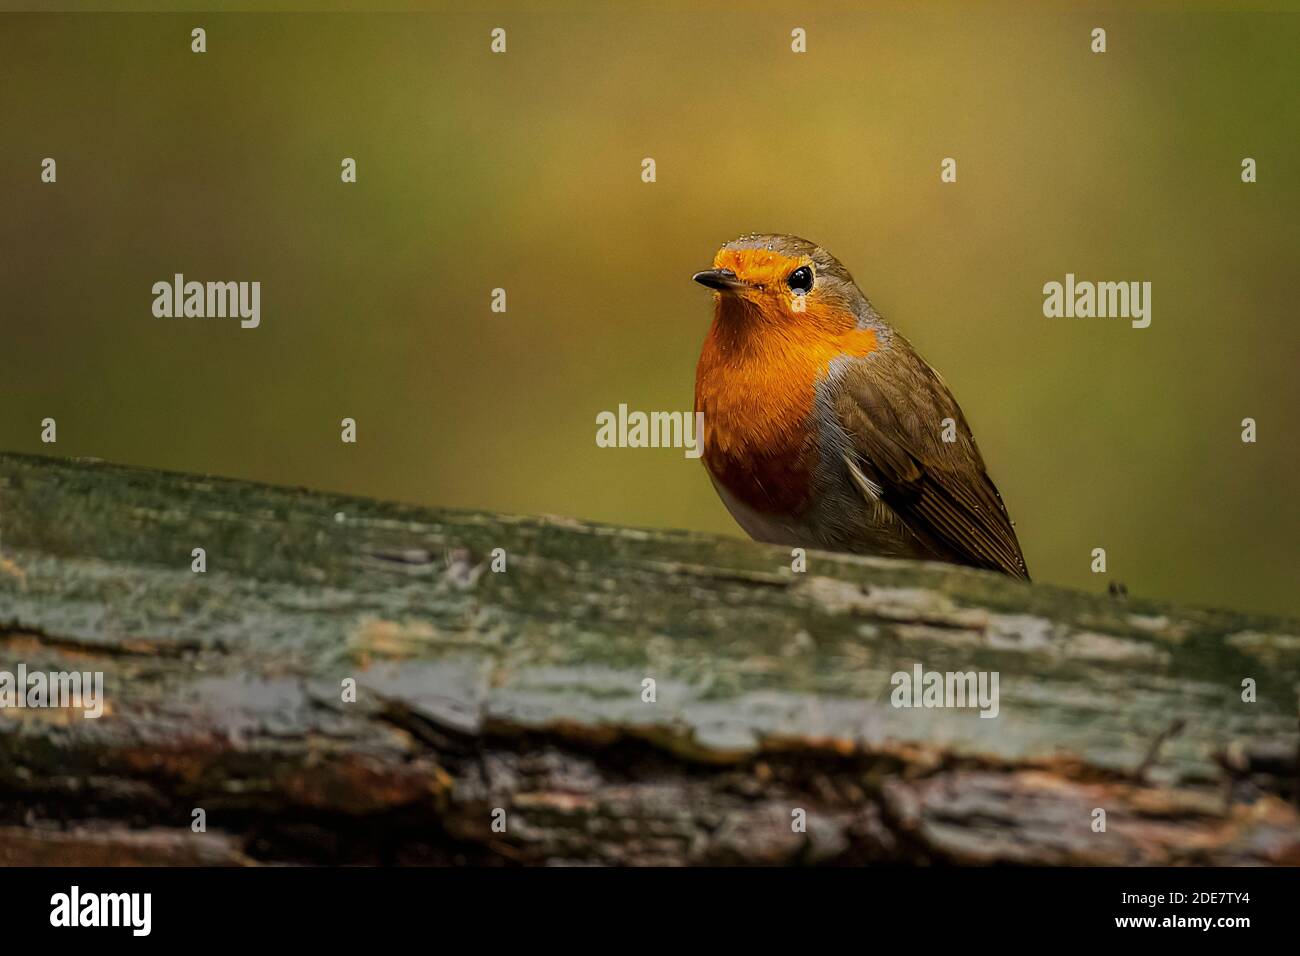 Reino Unido, Yorkshire - 2 de noviembre de 020: European Robin peinando sobre un árbol caído Foto de stock